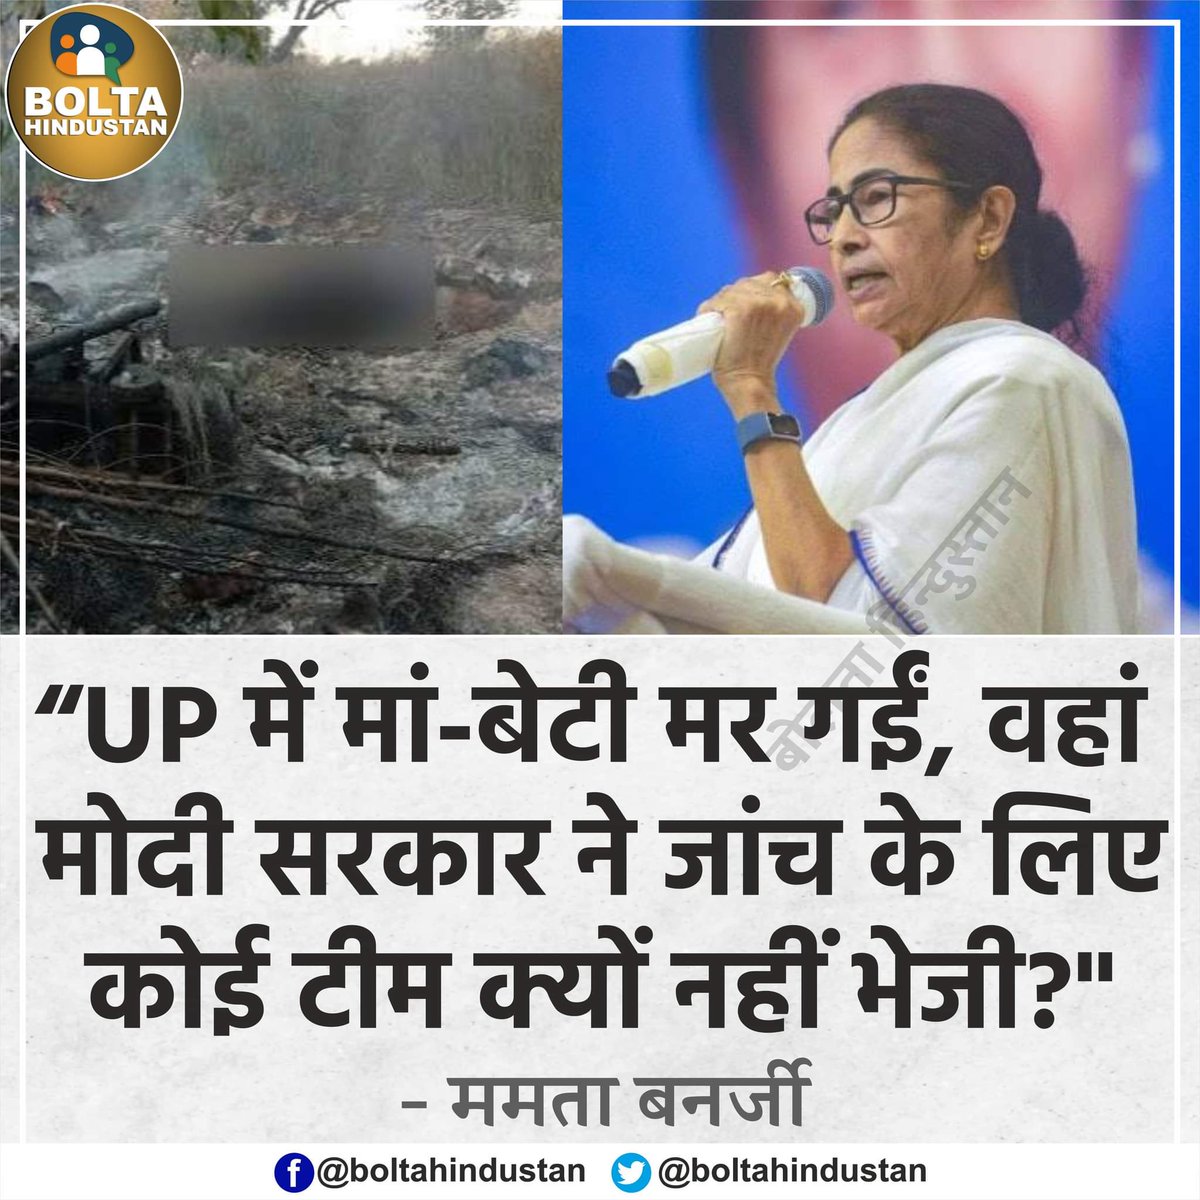 UP में 'मां-बेटी' जिंदा जलकर मर गईं, वहां मोदी सरकार ने जांच के लिए कोई टीम क्यों नहीं भेजी? : ममता बनर्जी